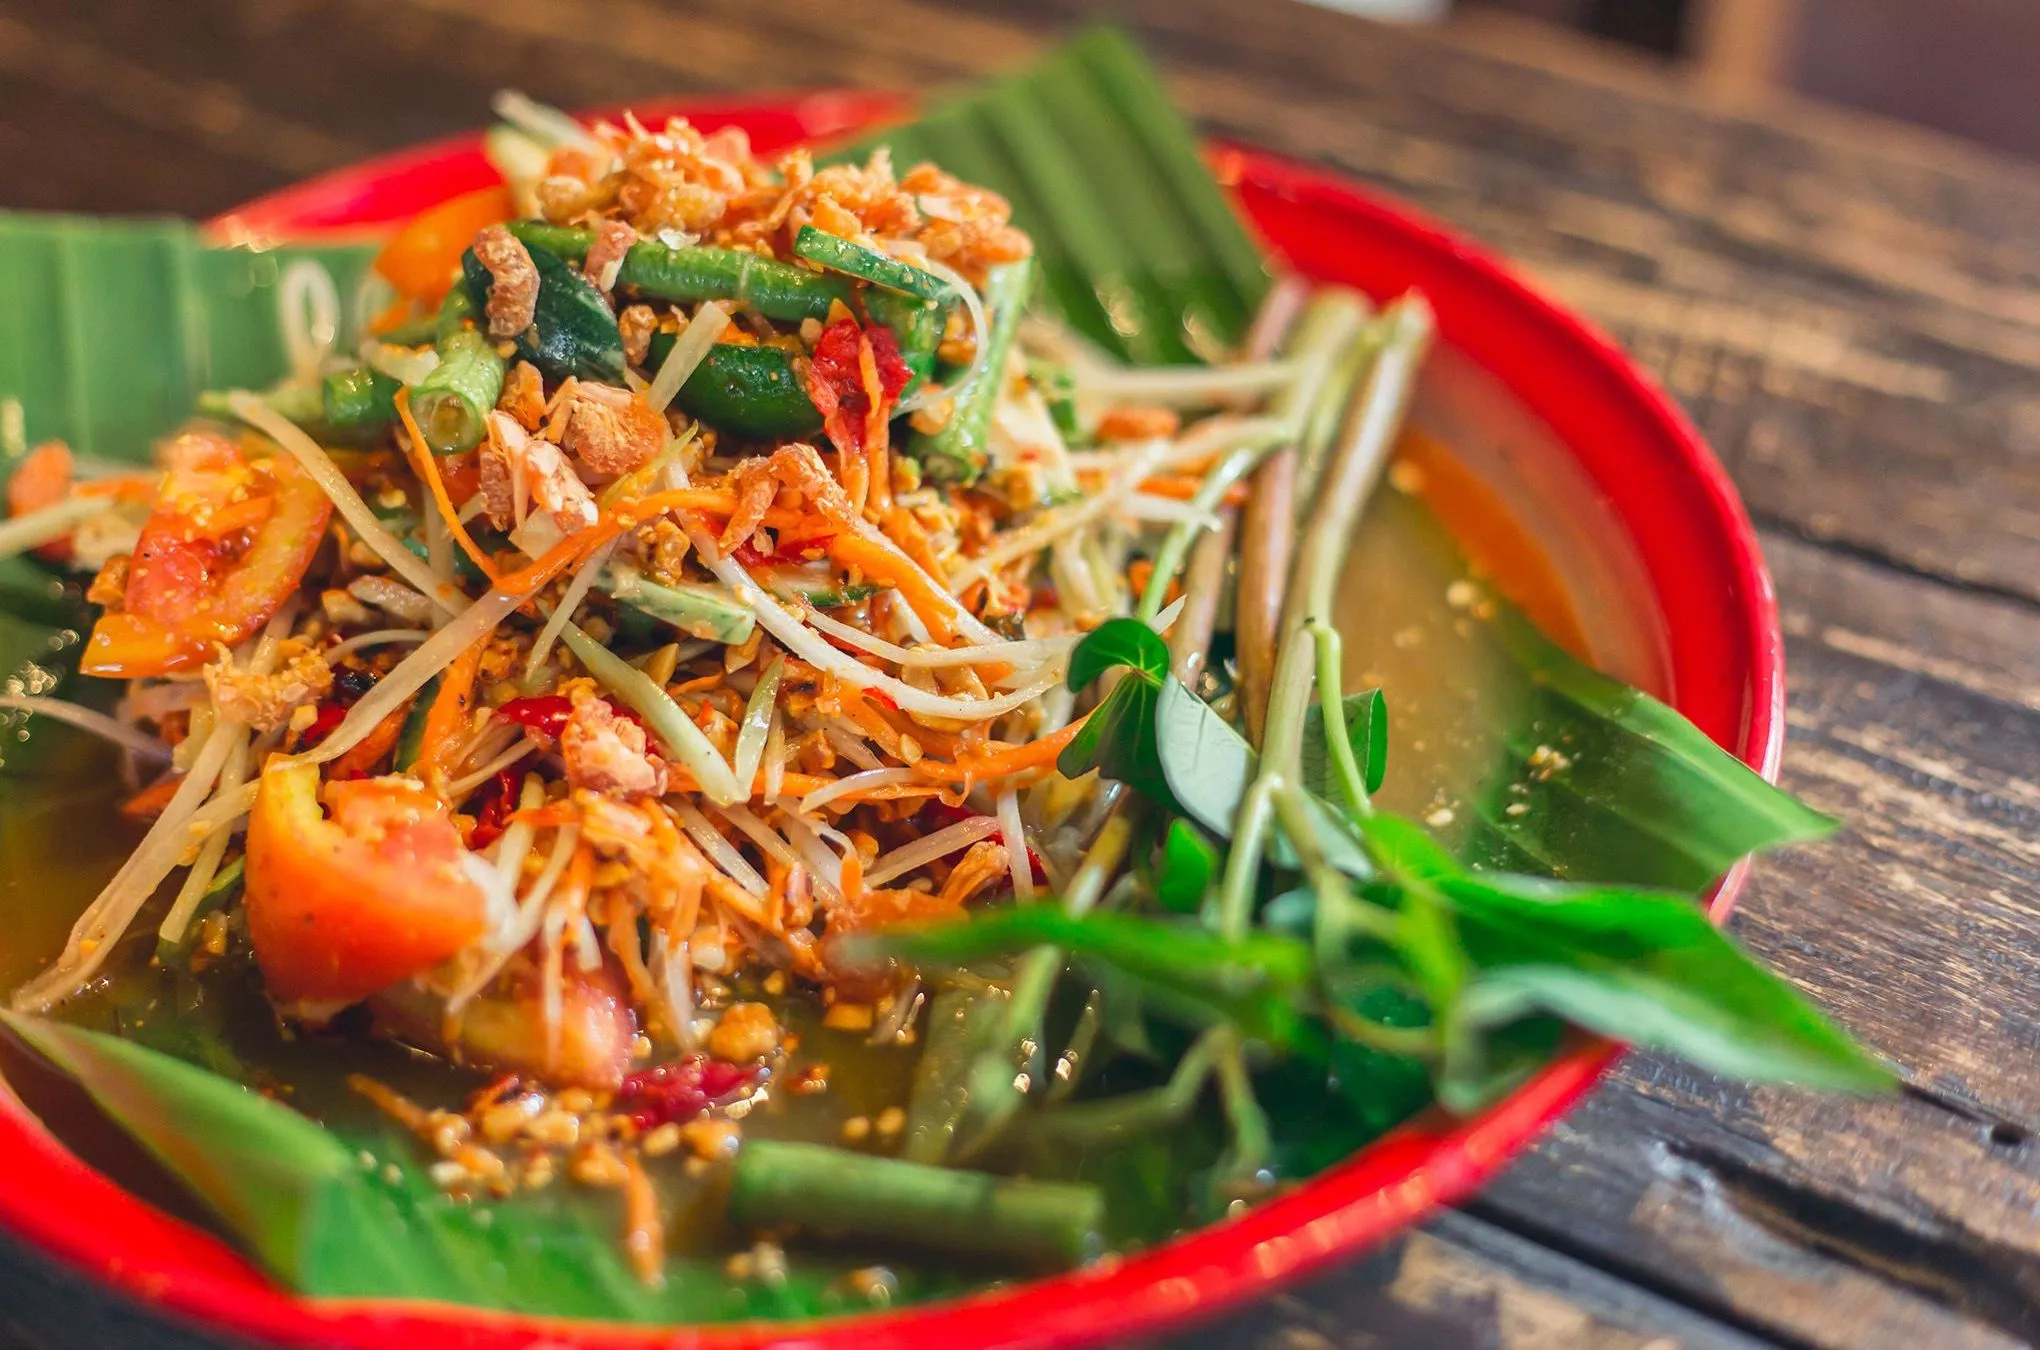 Thailändische Spezialität mit laotischen Wurzeln: som tam, ein Salat auf Grundlage von Papayastreifen und Tomaten